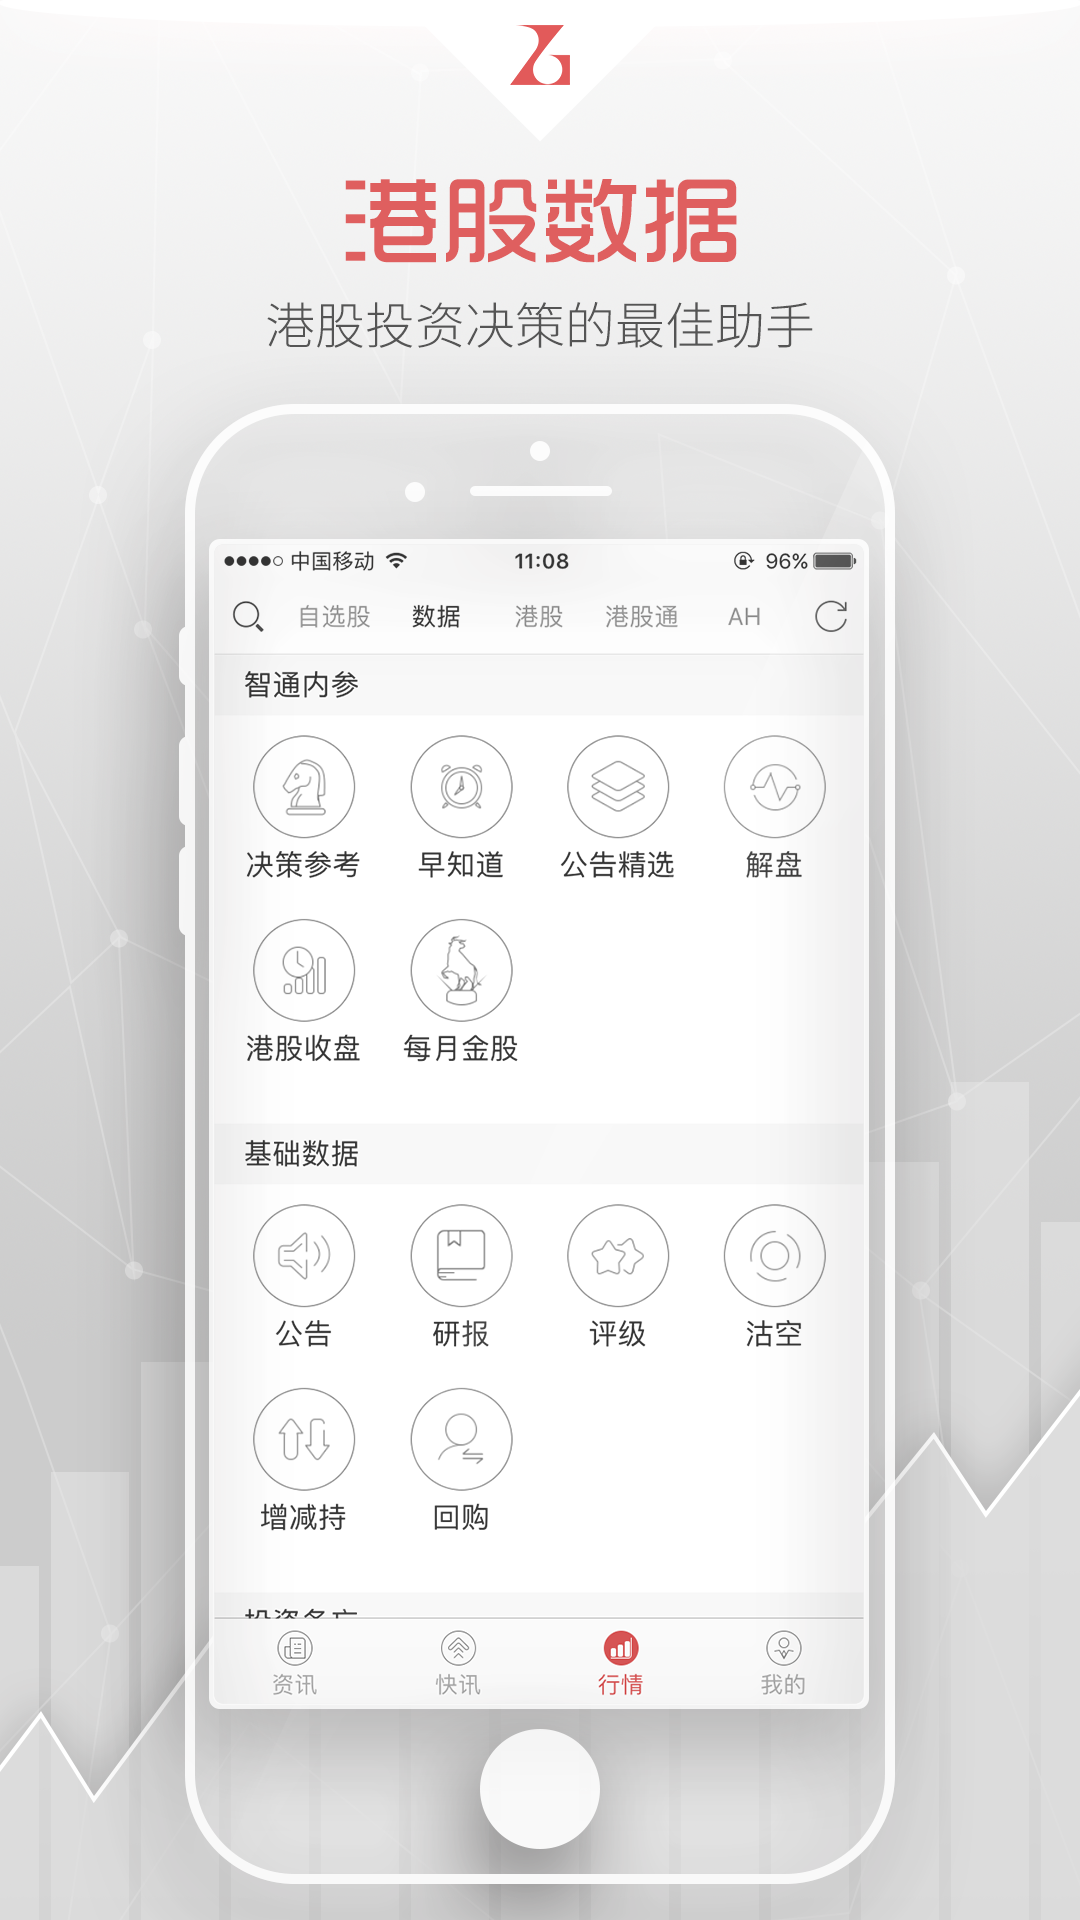 智通财经最新下载,官网安卓版app下载安装